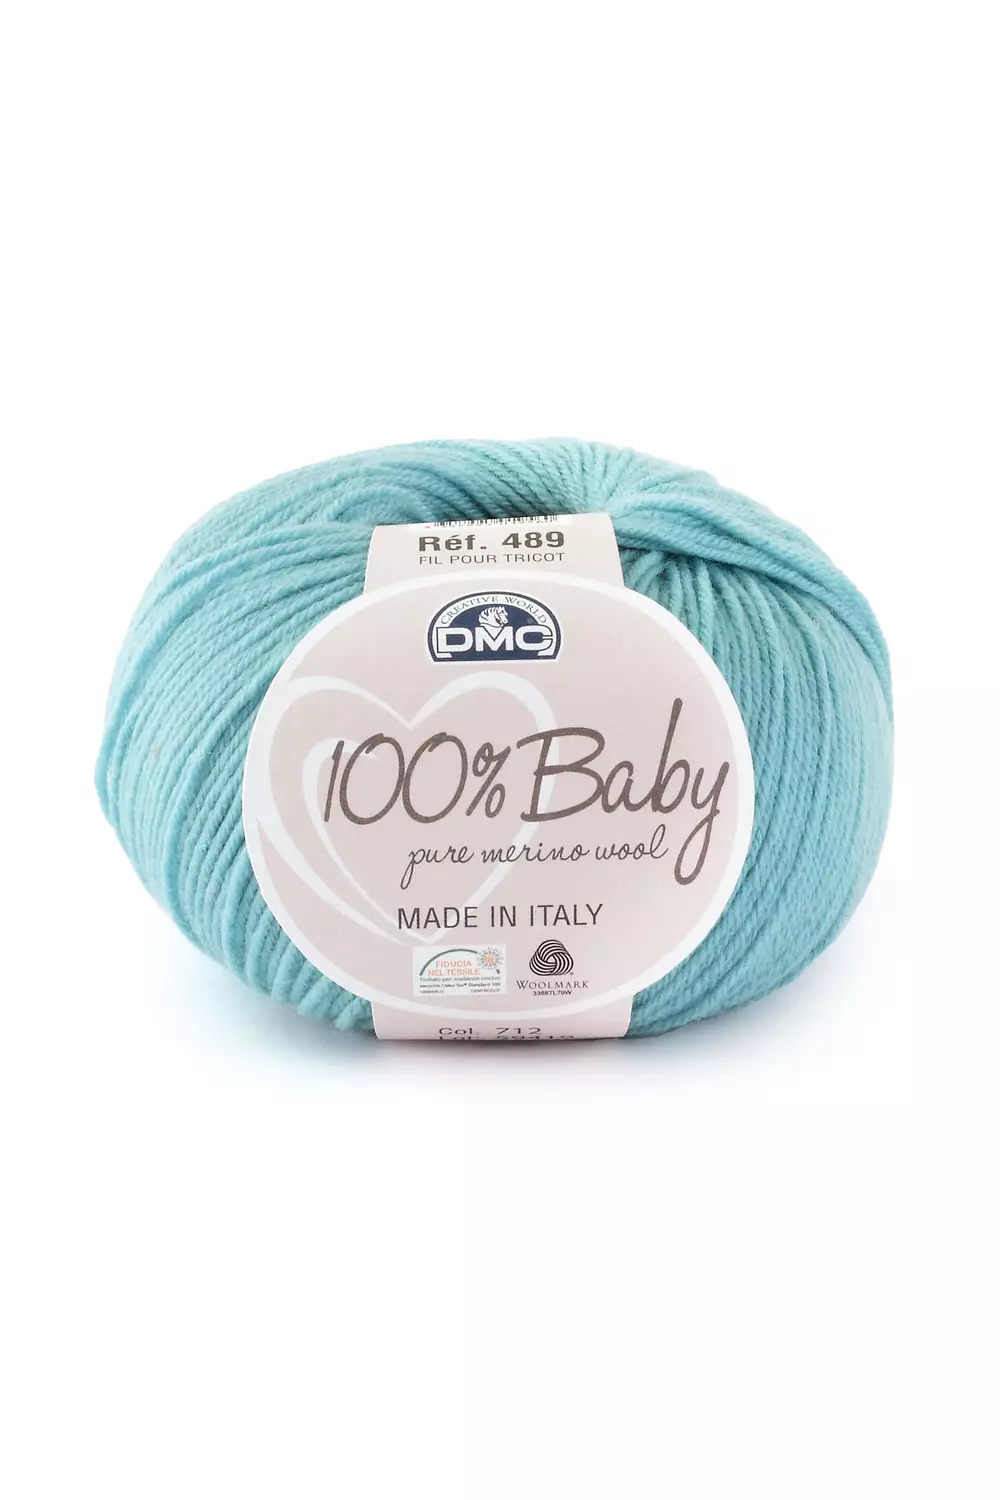 100% pure merino wool yarn for